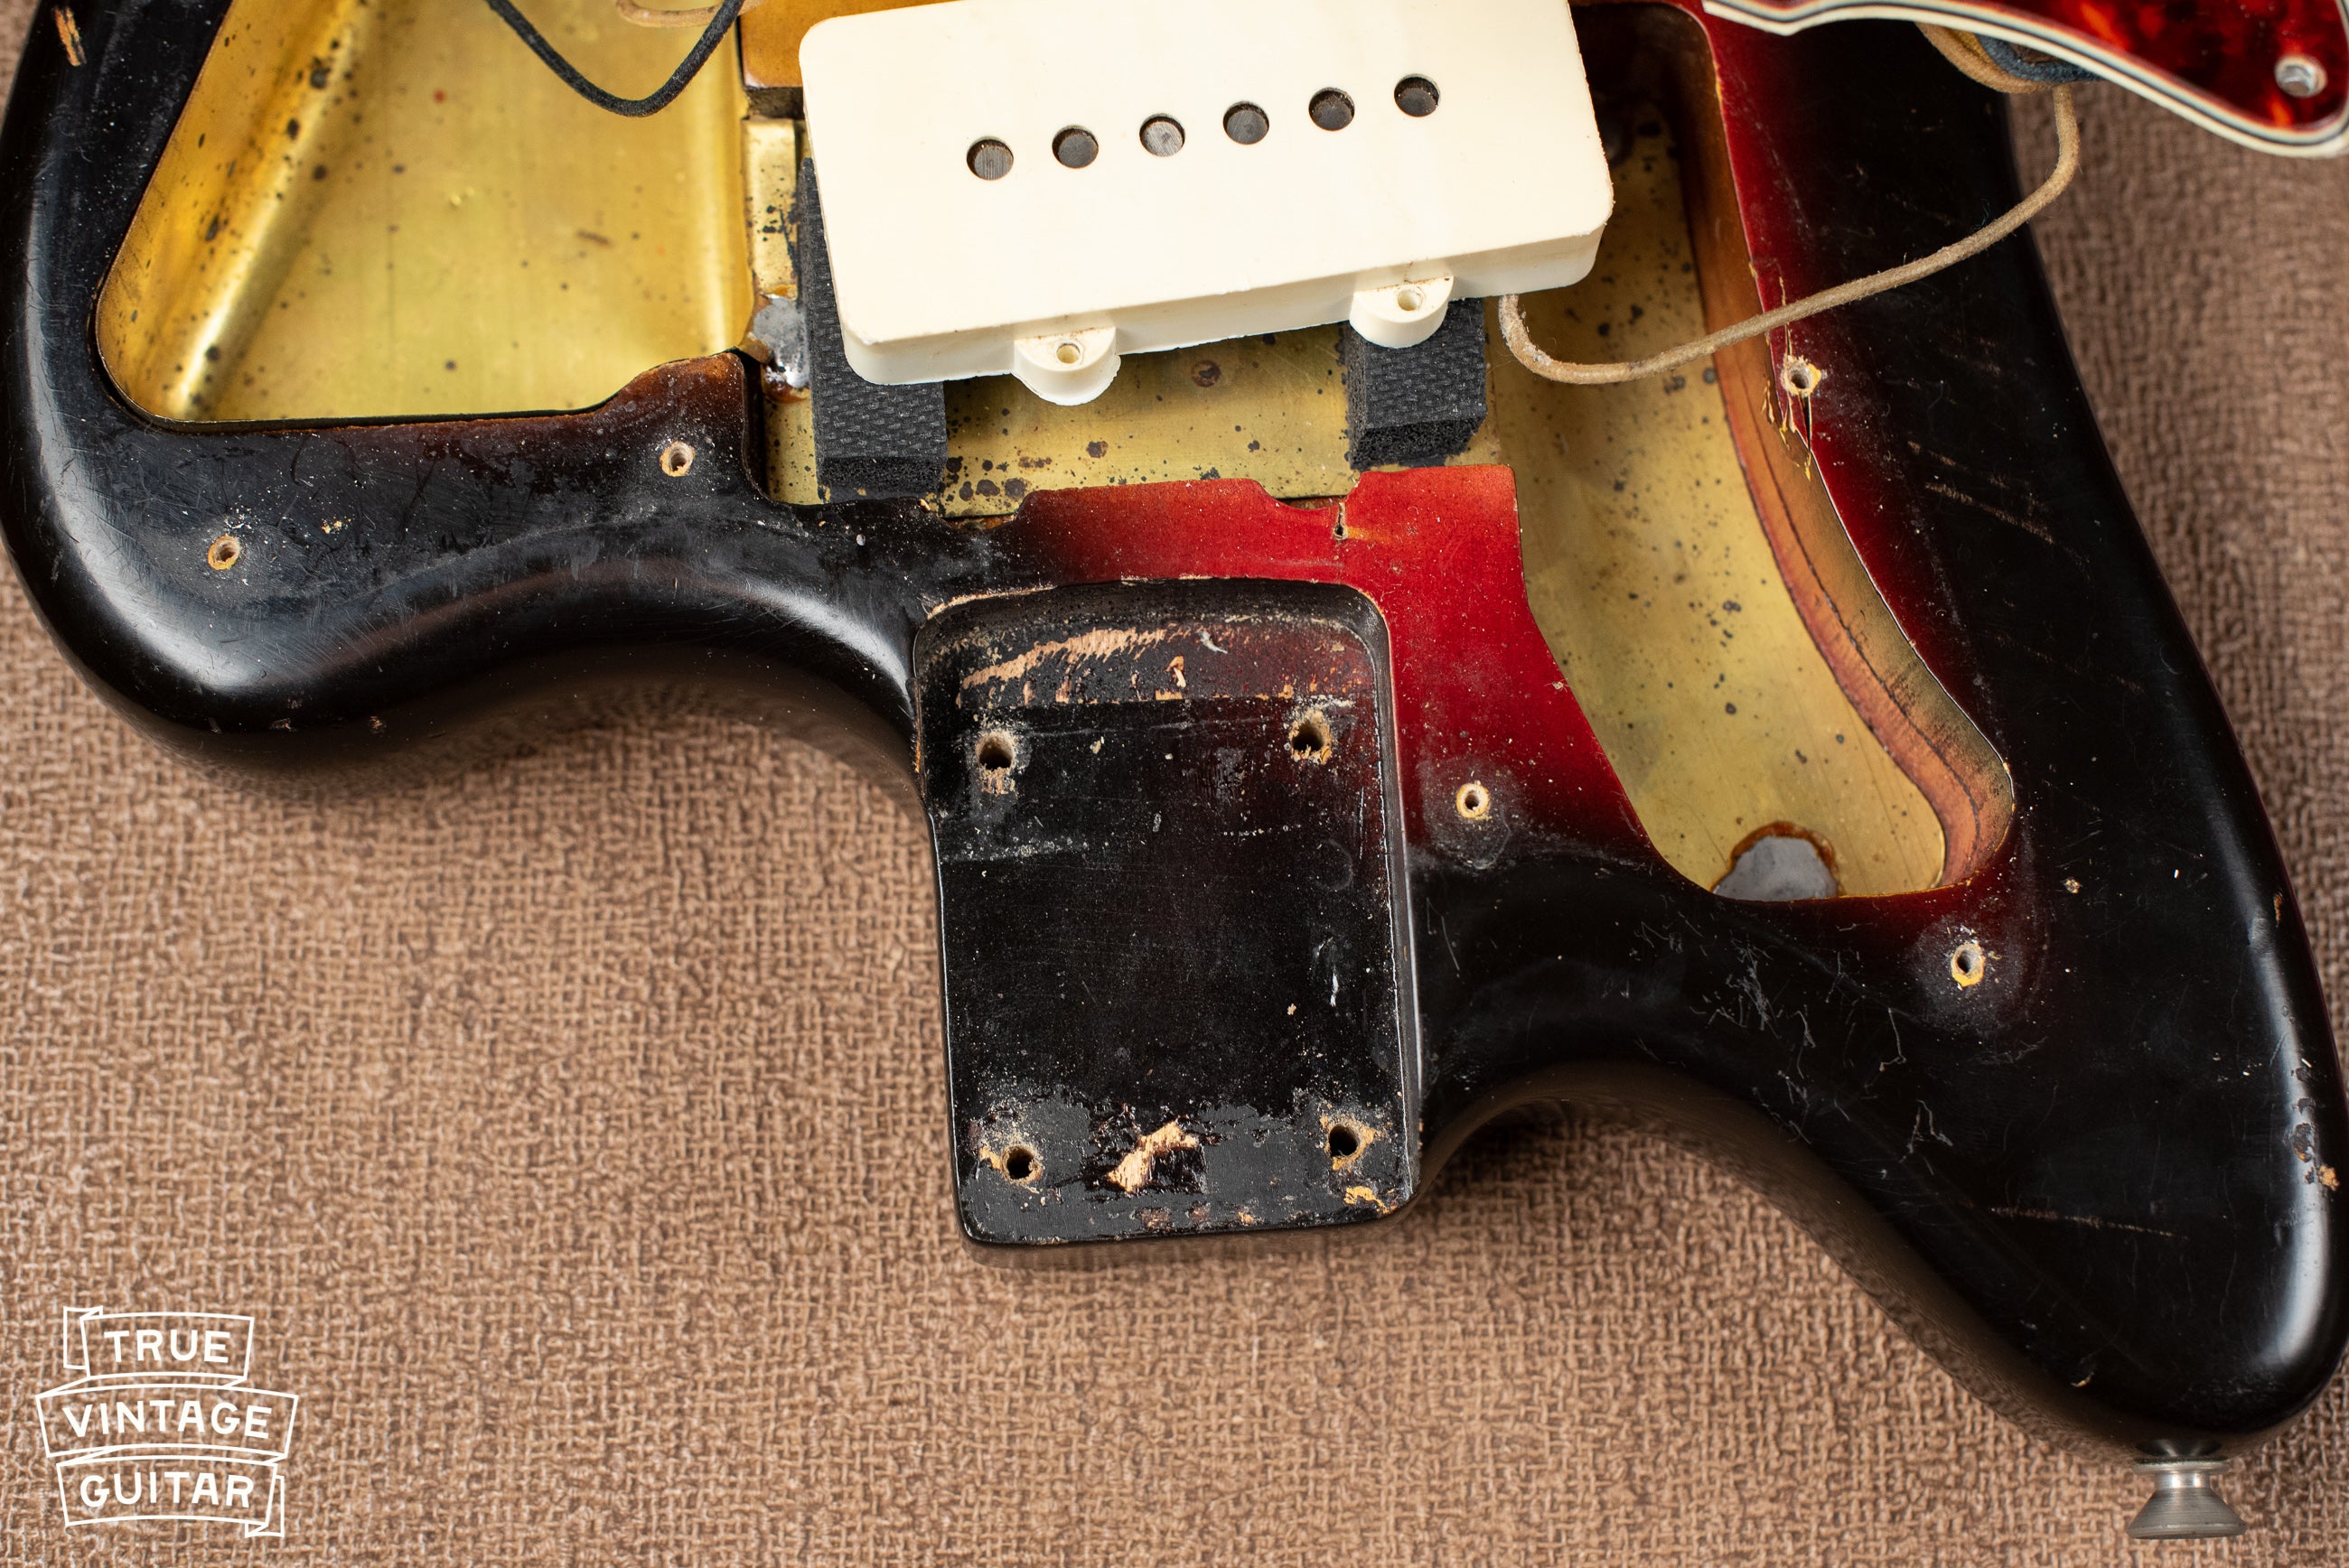 Neck pocket, Vintage 1963 Fender Jazzmaster electric guitar